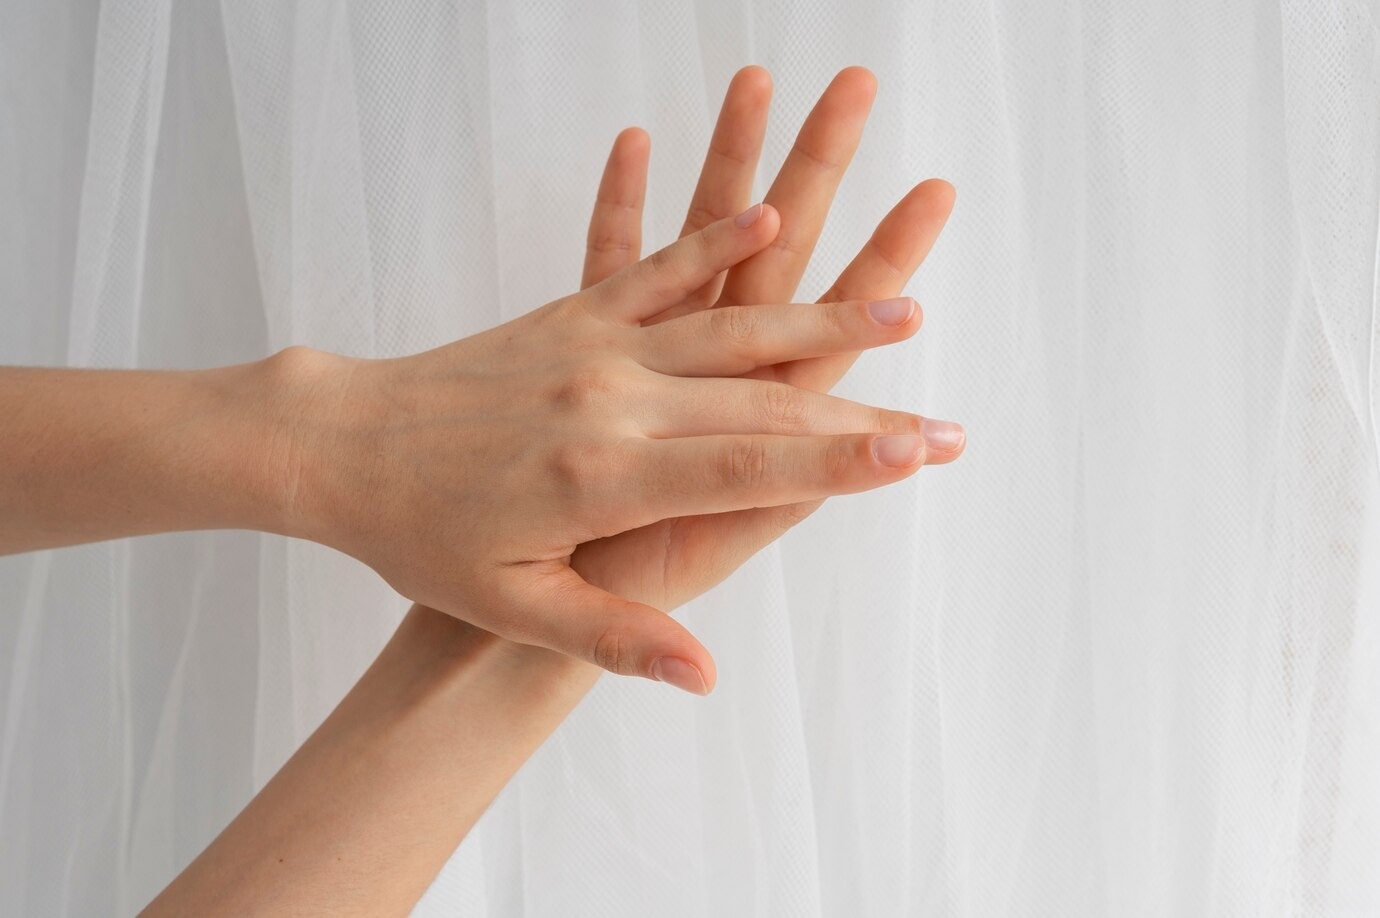 Доктор Бремс: Легкий «щипок» фаланги пальца руки определит обезвоживание